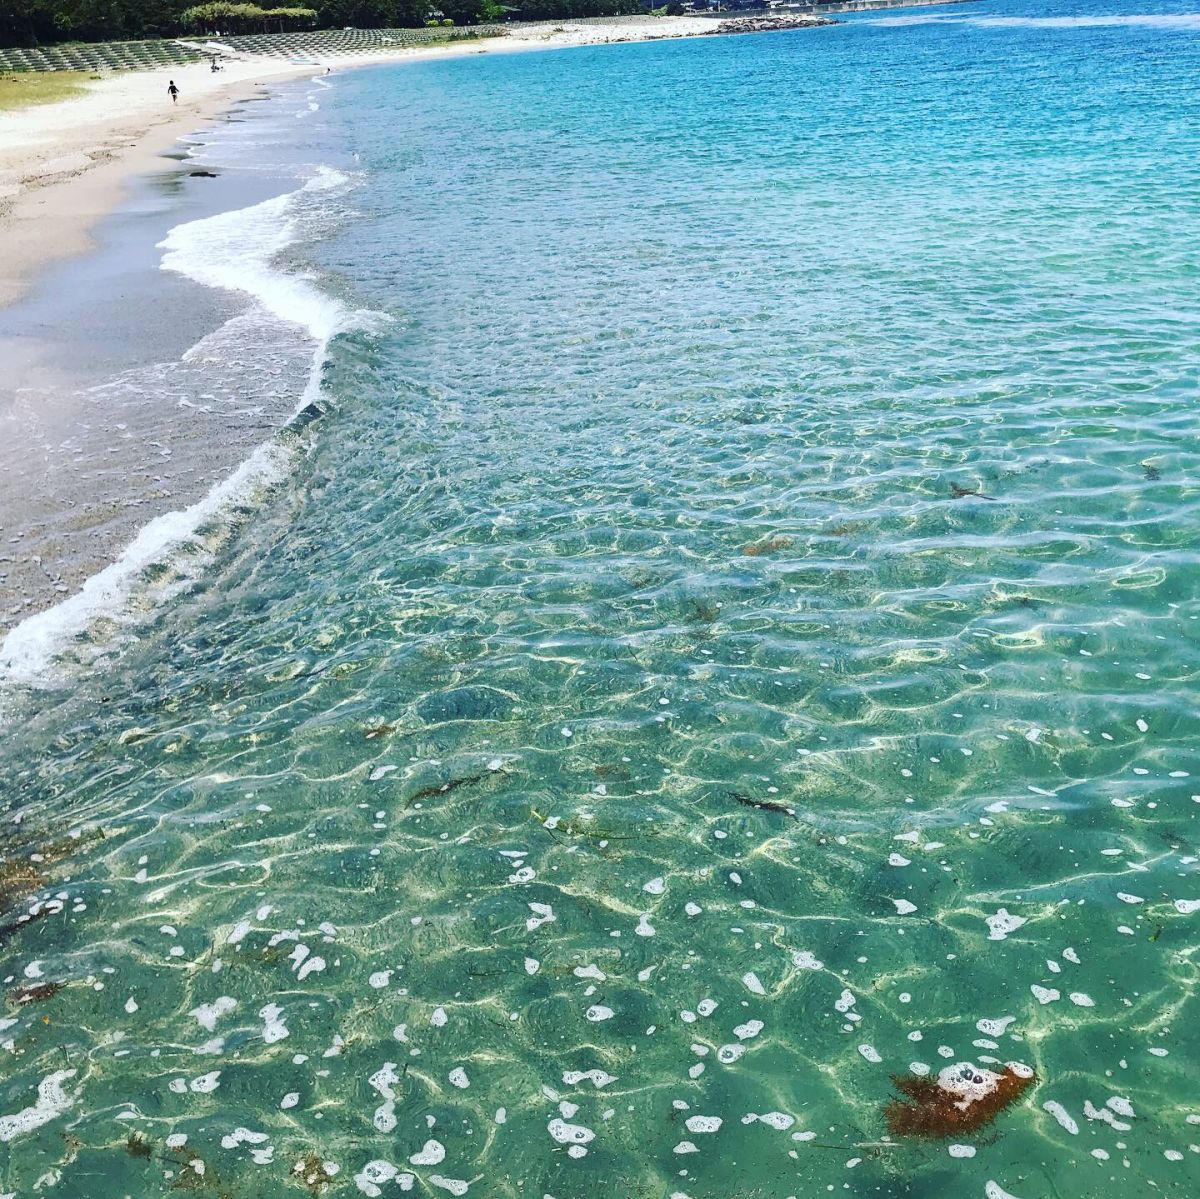 水がきれいな海水浴場ベスト25以内に佐渡のビーチが4つもランクイン 佐渡市 新潟県観光協会公式ブログ たびきち 公式 新潟県のおすすめ観光 旅行情報 にいがた観光ナビ